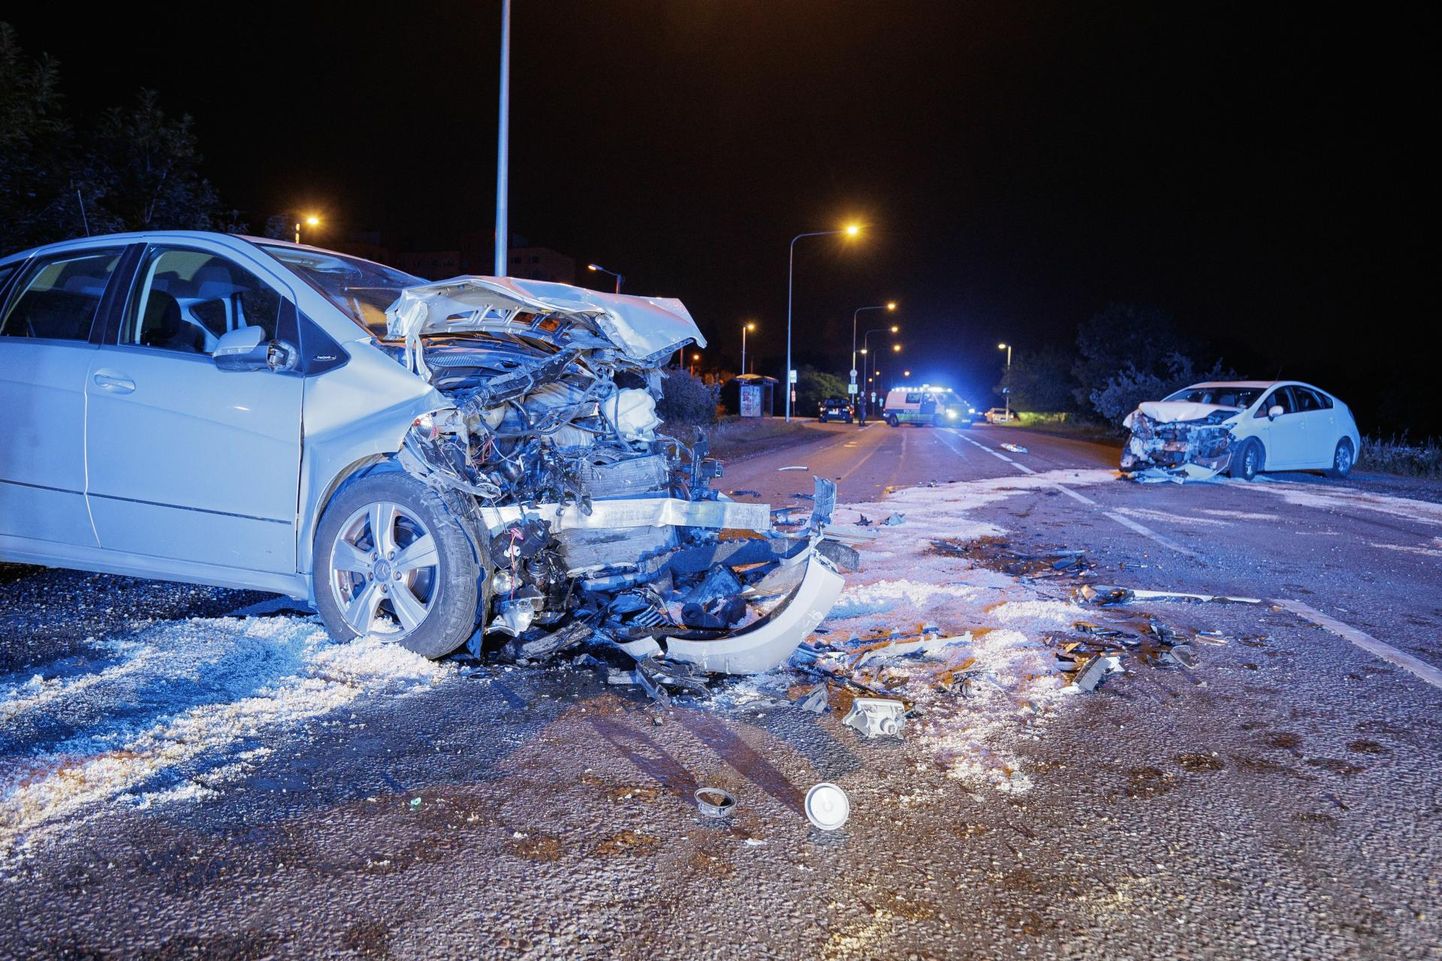 Juulikuine liiklusõnnetus Lasnamäel. Kohustuslik liikluskindlustus peab olema kõikidel liiklusregistrusse natud sõidukitel ning see hüvitab liiklusõnnetuse korral sõidukiga teistele tekitatud kahju.